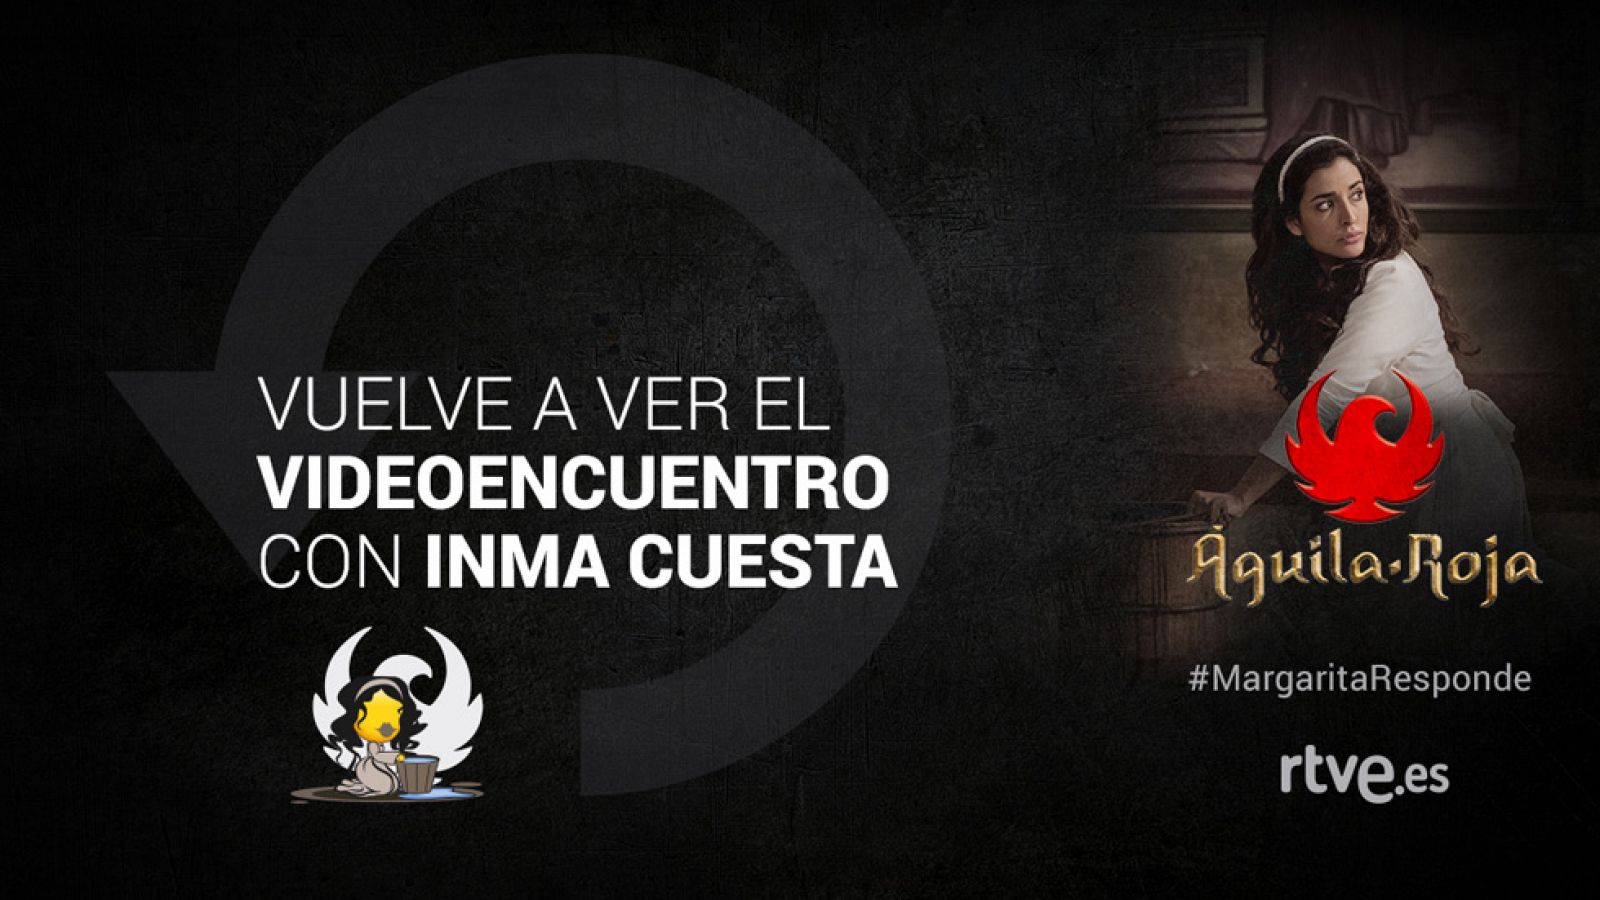 Águila Roja - Vuelve a ver el videoencuentro #MargaritaResponde con Inma Cuesta